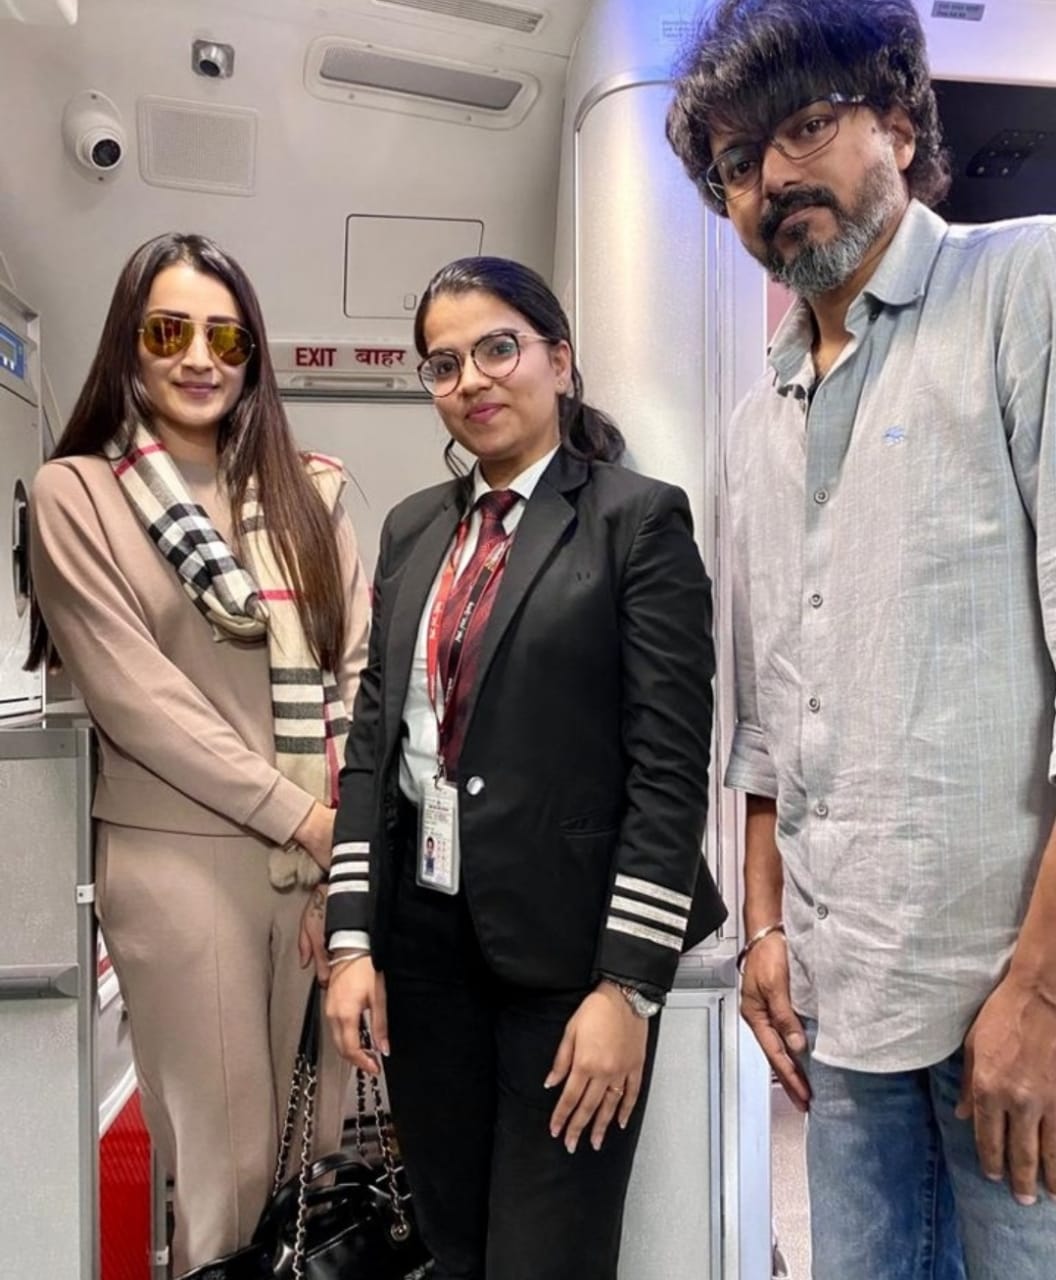 Actor Vijay and actress Trisha in Flight pic Goes Viral